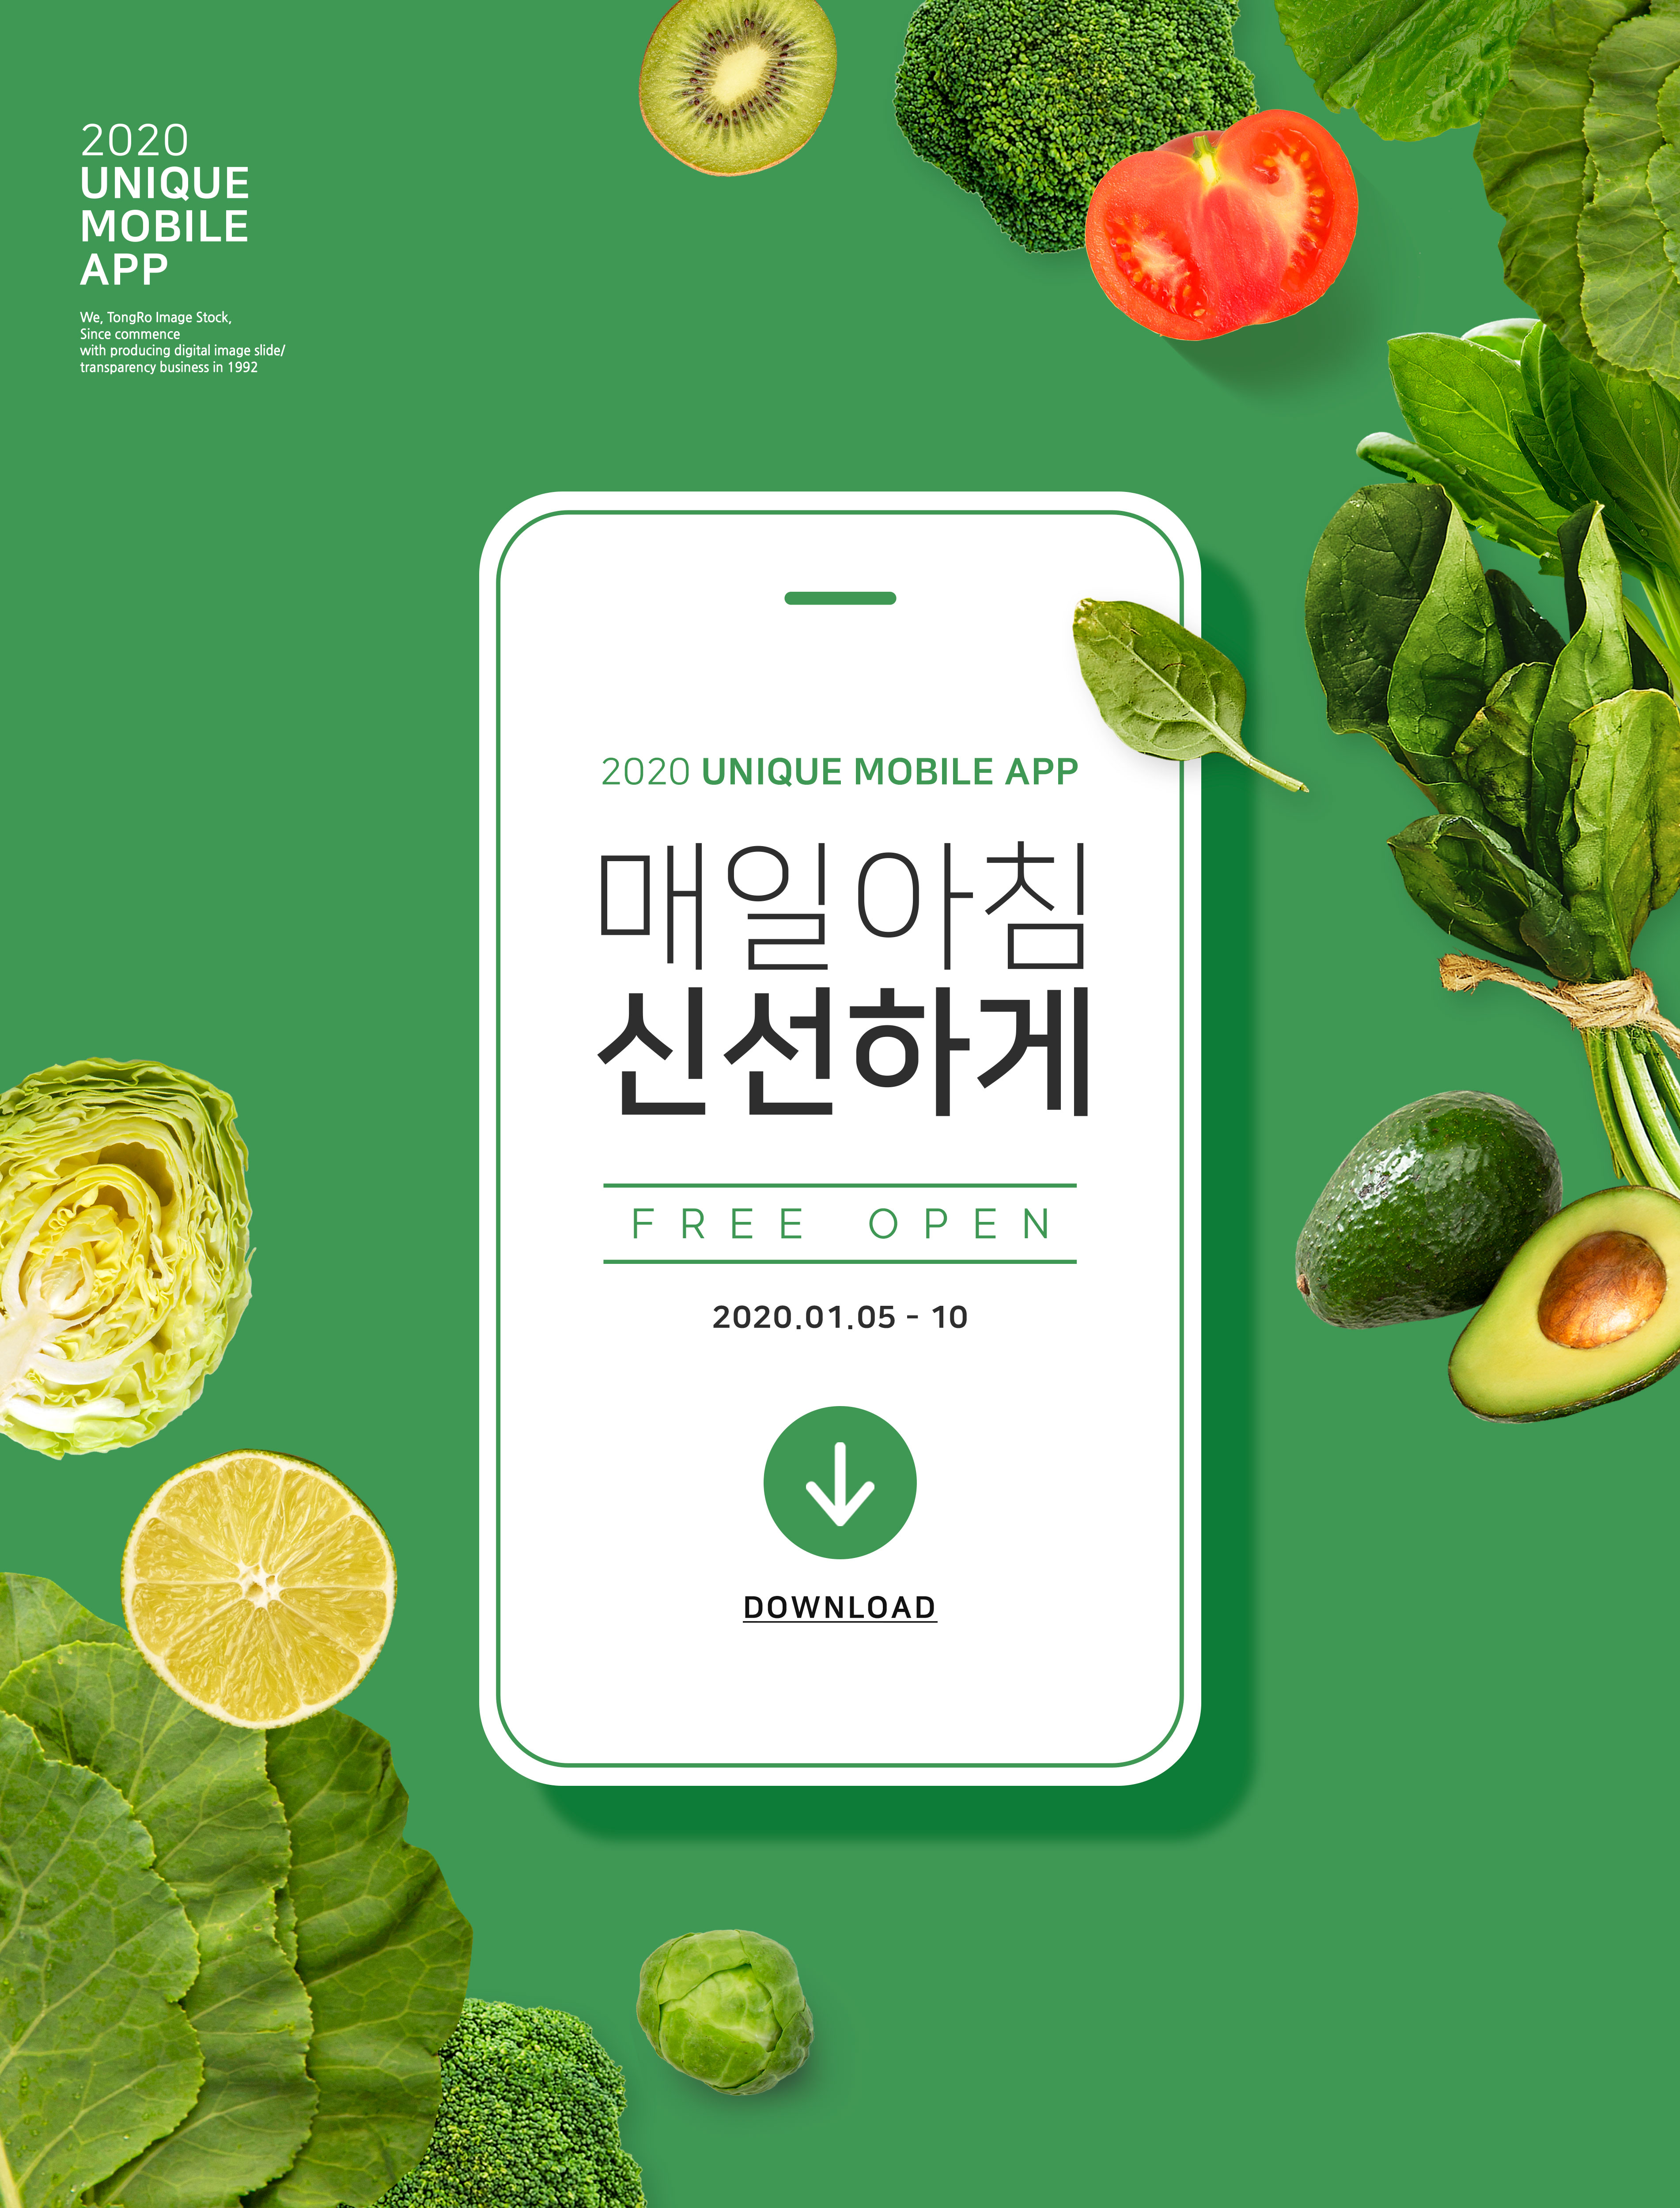 绿色新鲜有机蔬菜在线订购配送主题海报PSD素材大洋岛精选韩国素材插图